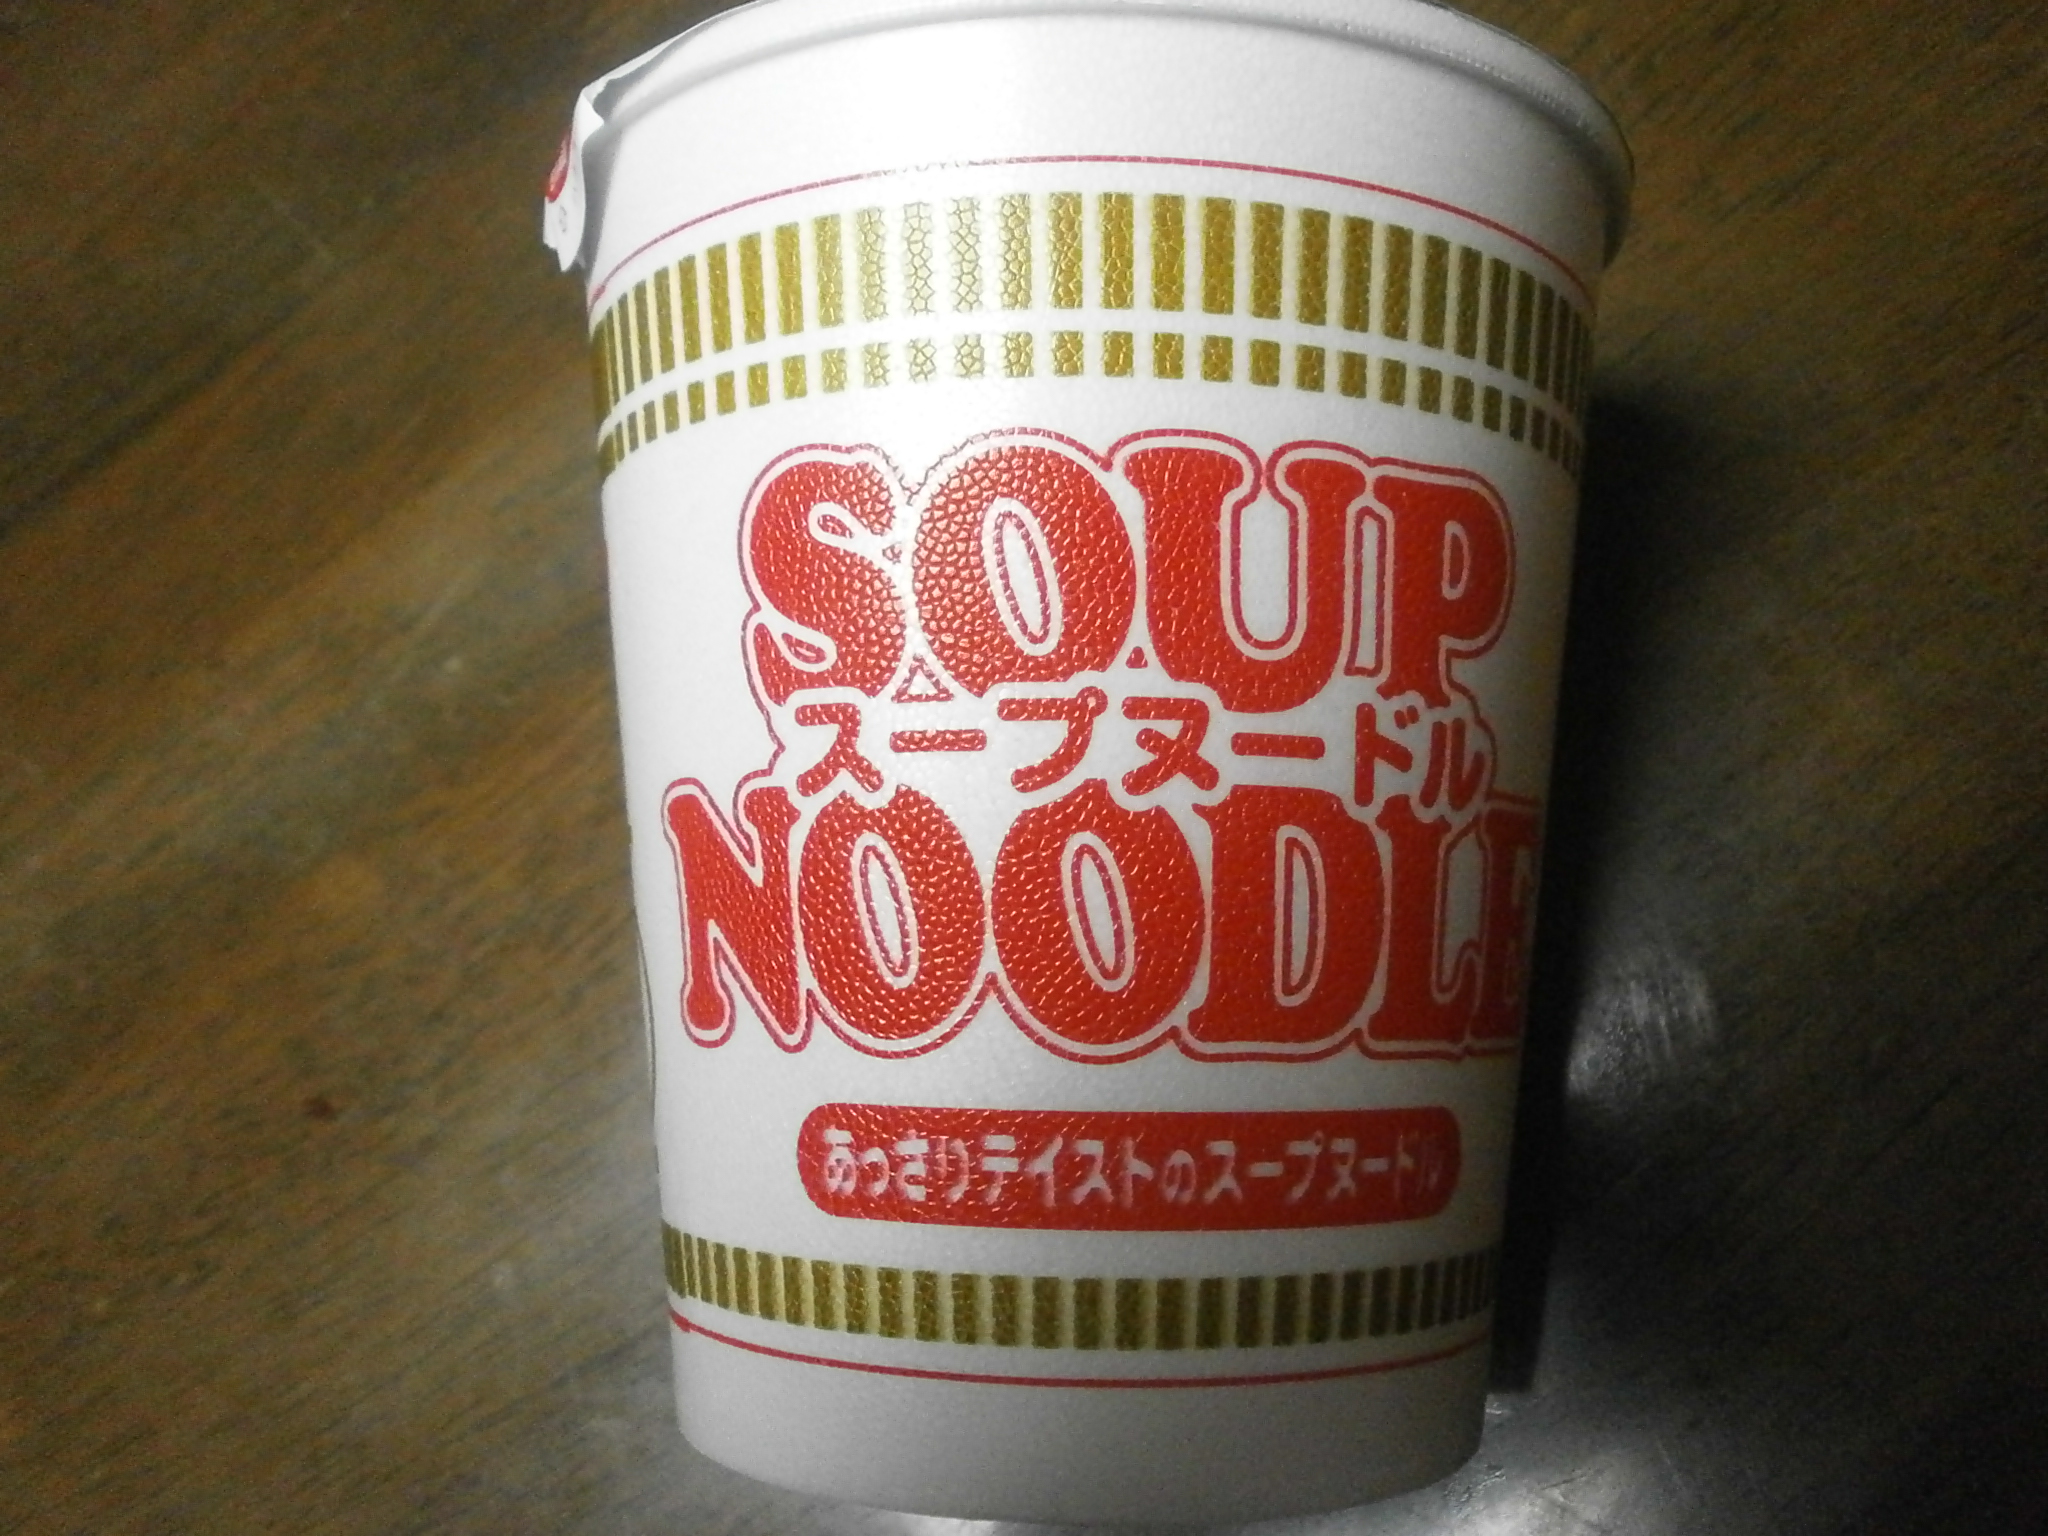 Quelle haute teneur en calories? Soupe de nouilles? Kitsune Udon?